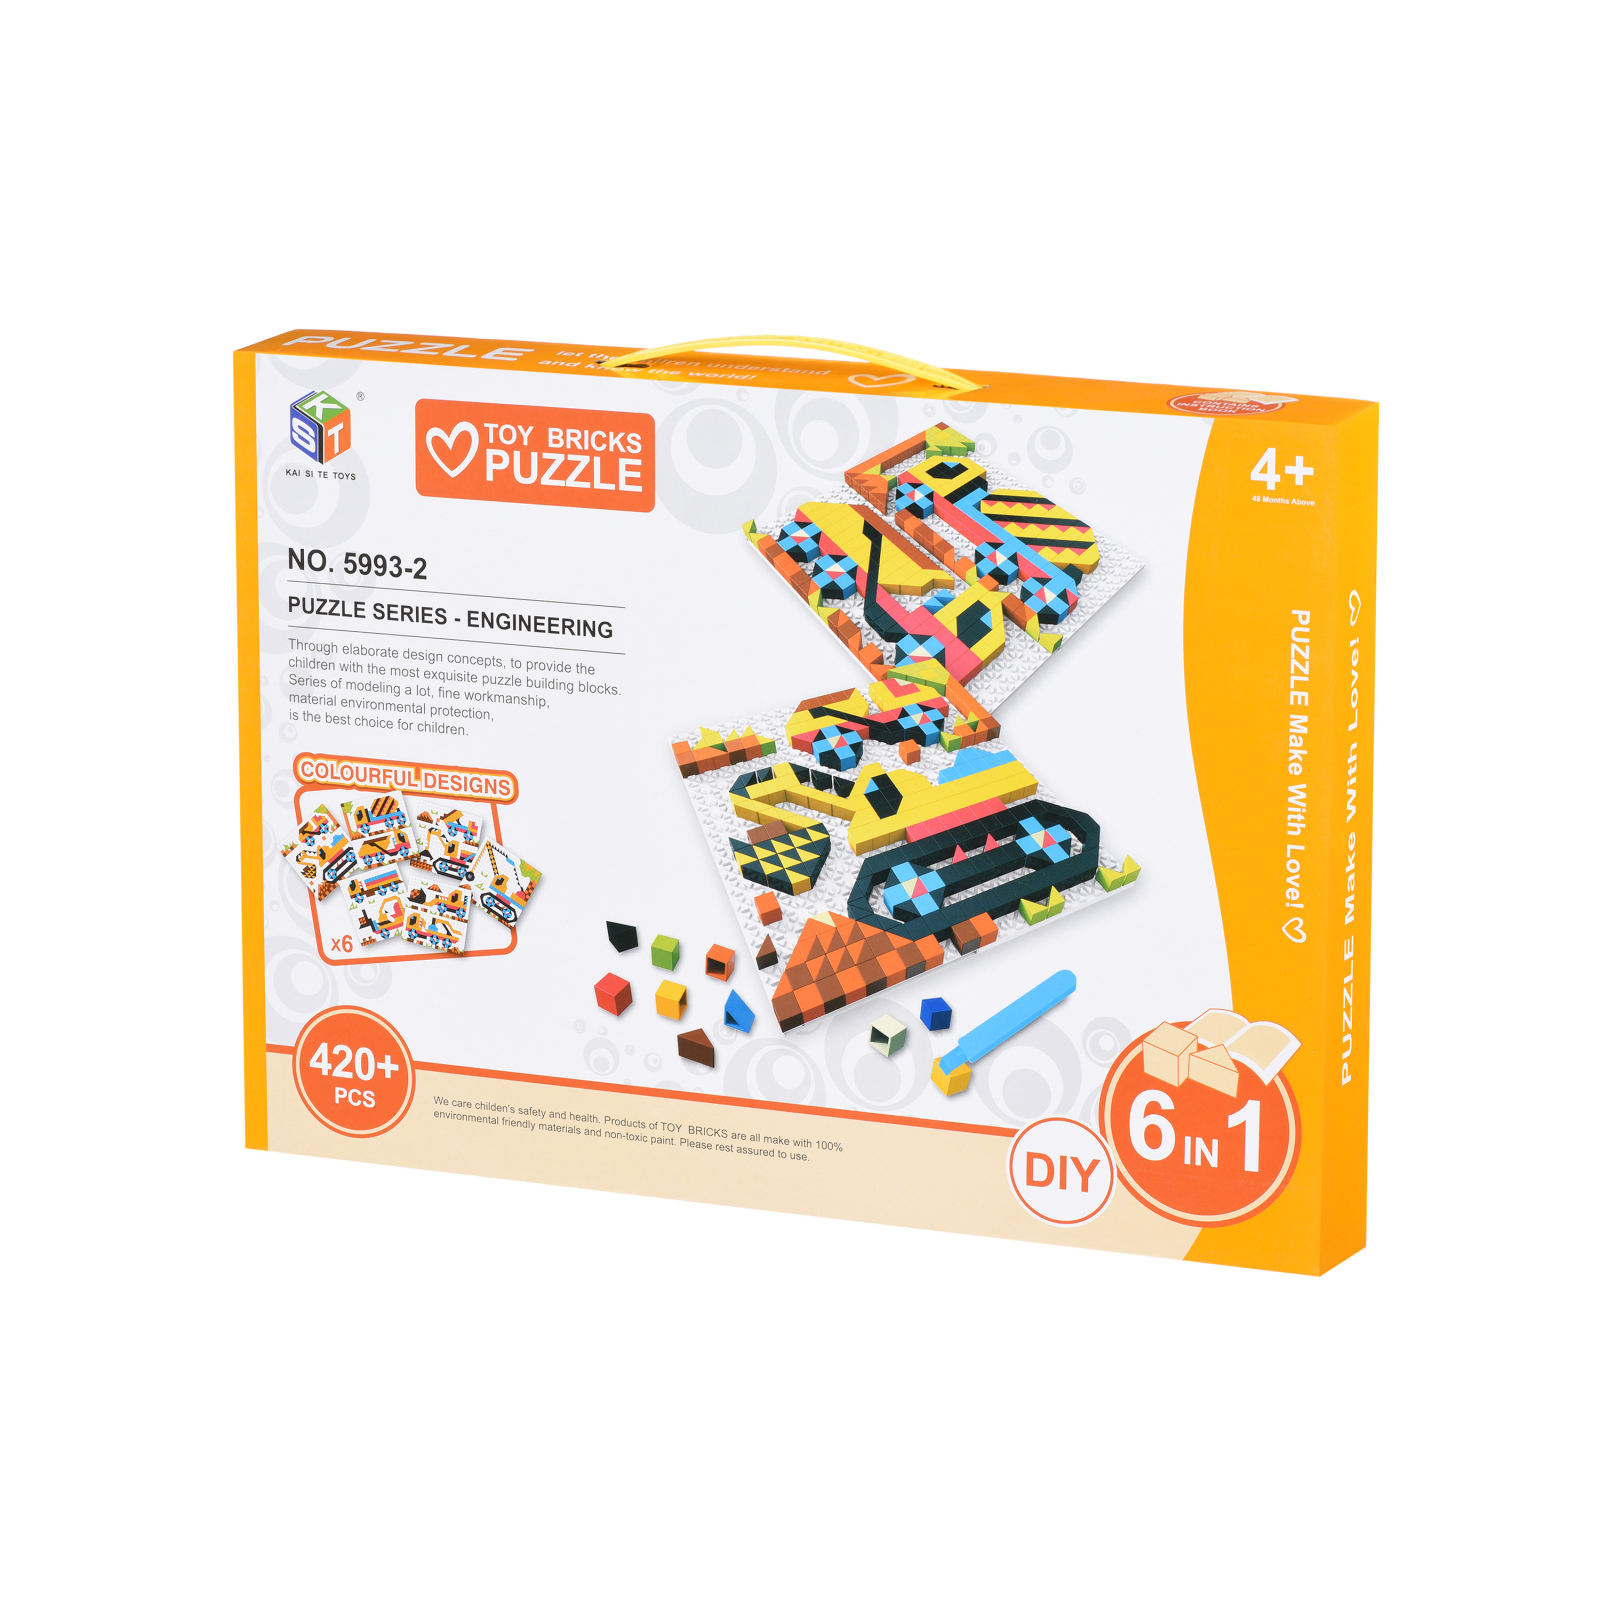 Набор для творчества Same Toy Colour ful designs 420 эл. (5993-2Ut)